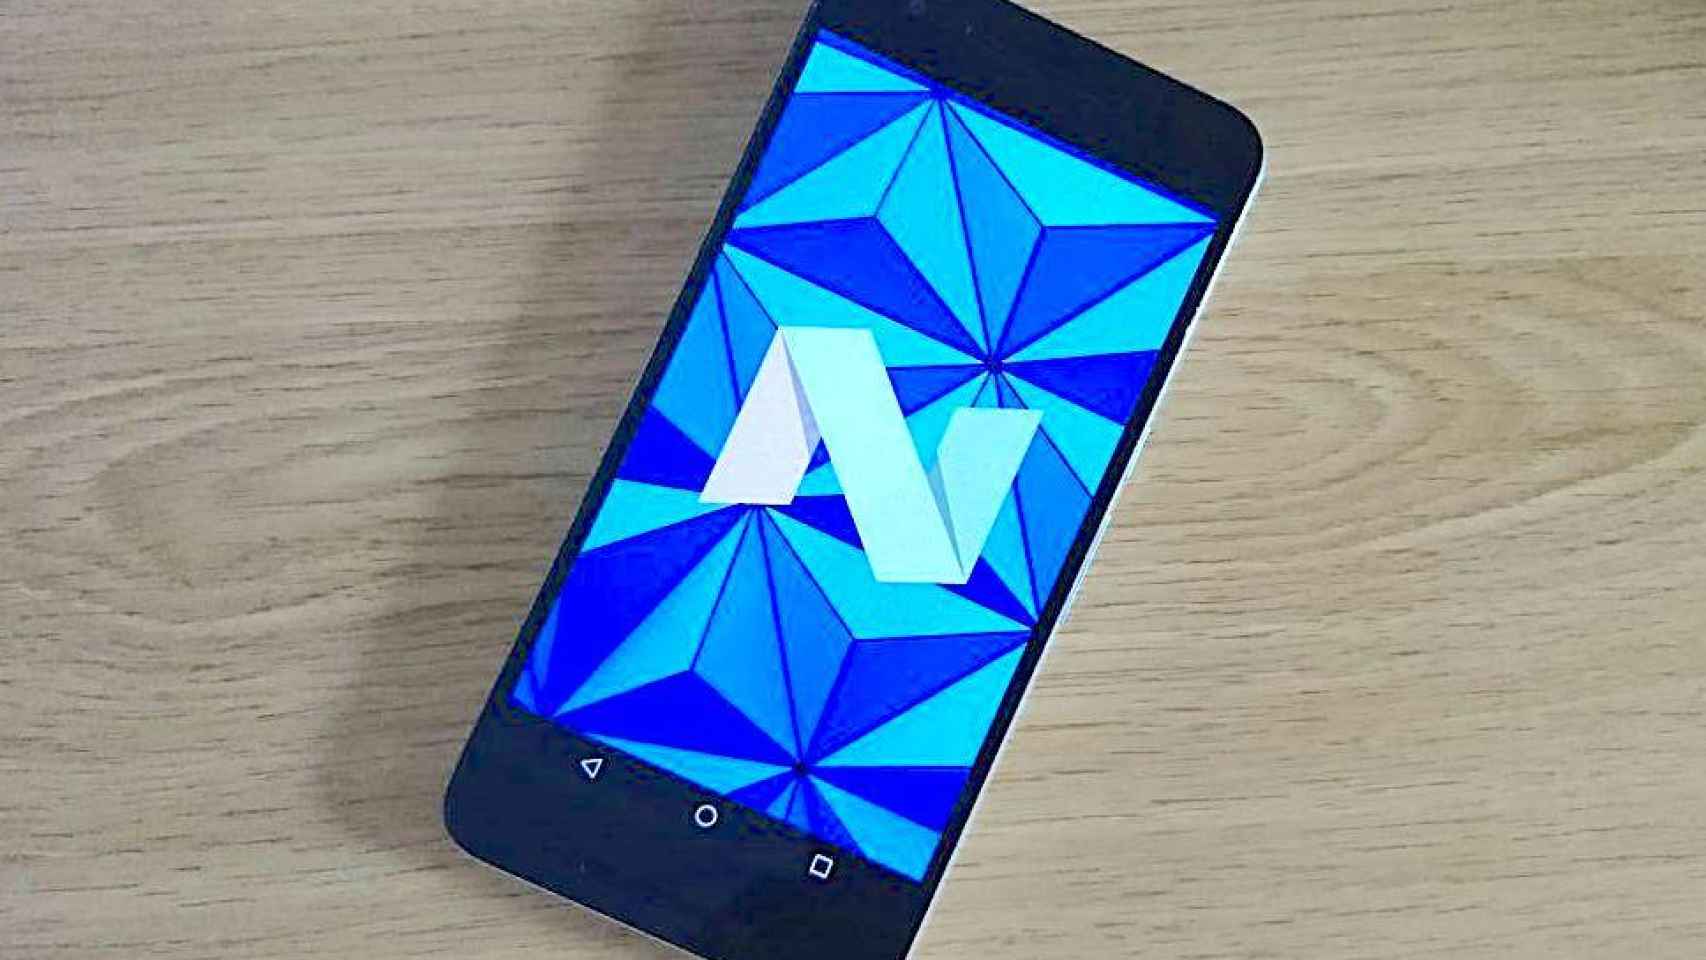 Probamos la última versión de Android 7.1 Nougat: todas las novedades al descubierto